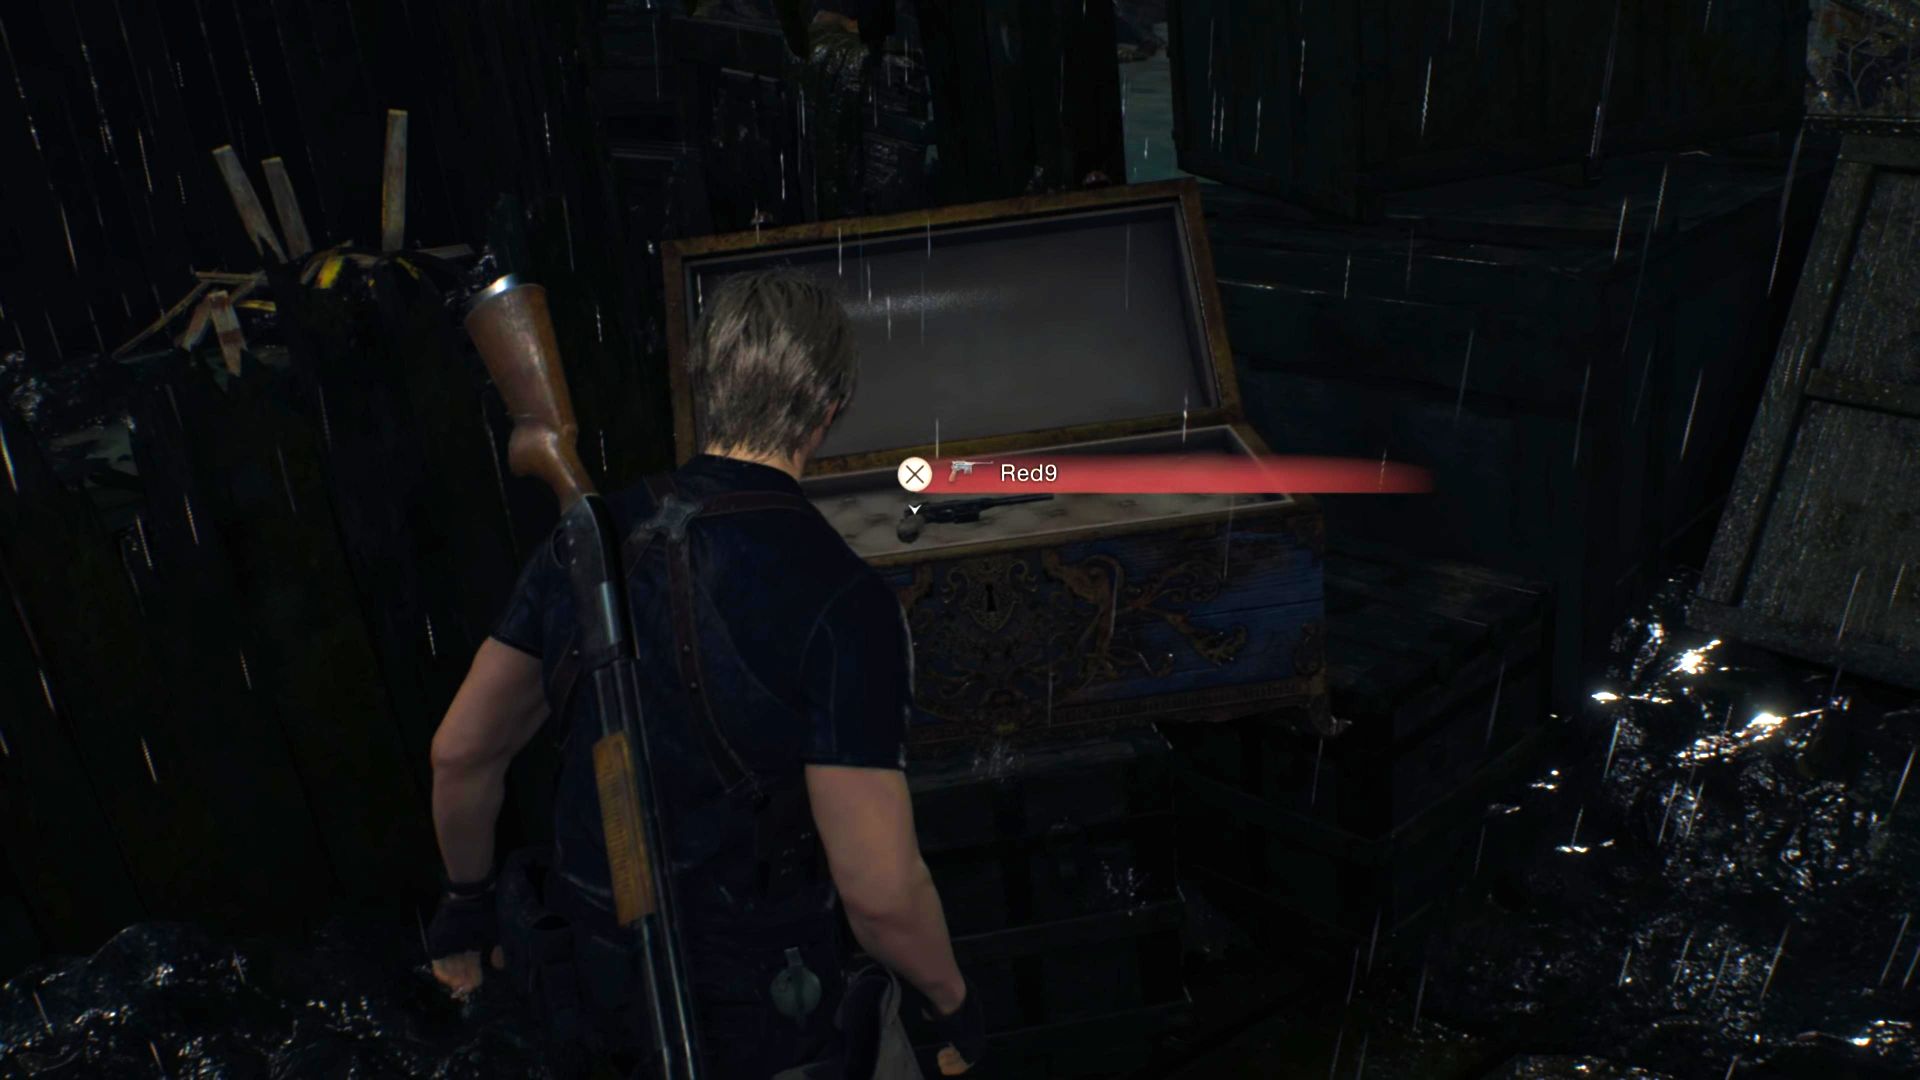 Resident Evil 4 Ремейк Red9 Расположение: Леон стоит перед синей сундуком, содержащей Red9 на палубе ветхой лодки в центре озера